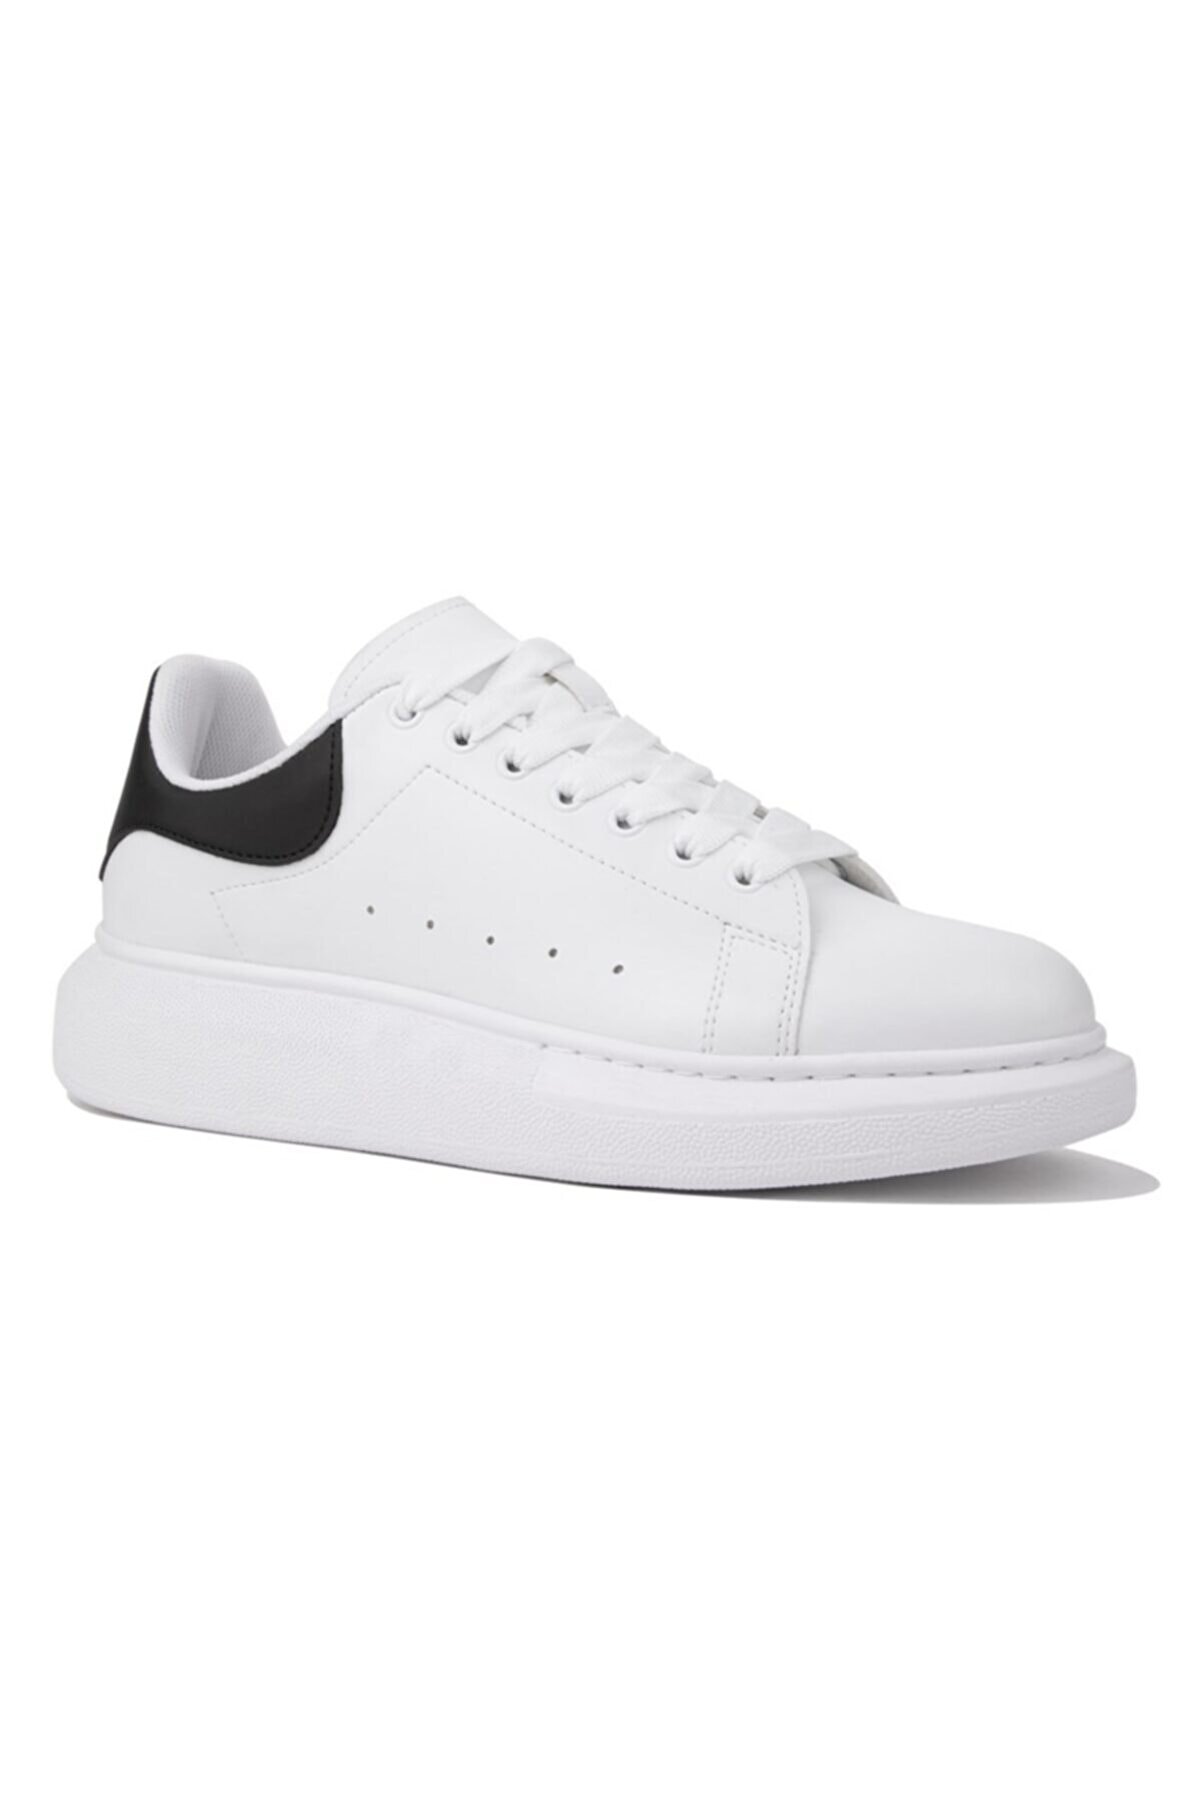 NAVYSIDE Unisex Beyaz Siyah Bağcıklı Sneaker-dar Kalıptır-yüksek Taban 4cm- Günlük Spor Ayakkabı-mcqueen